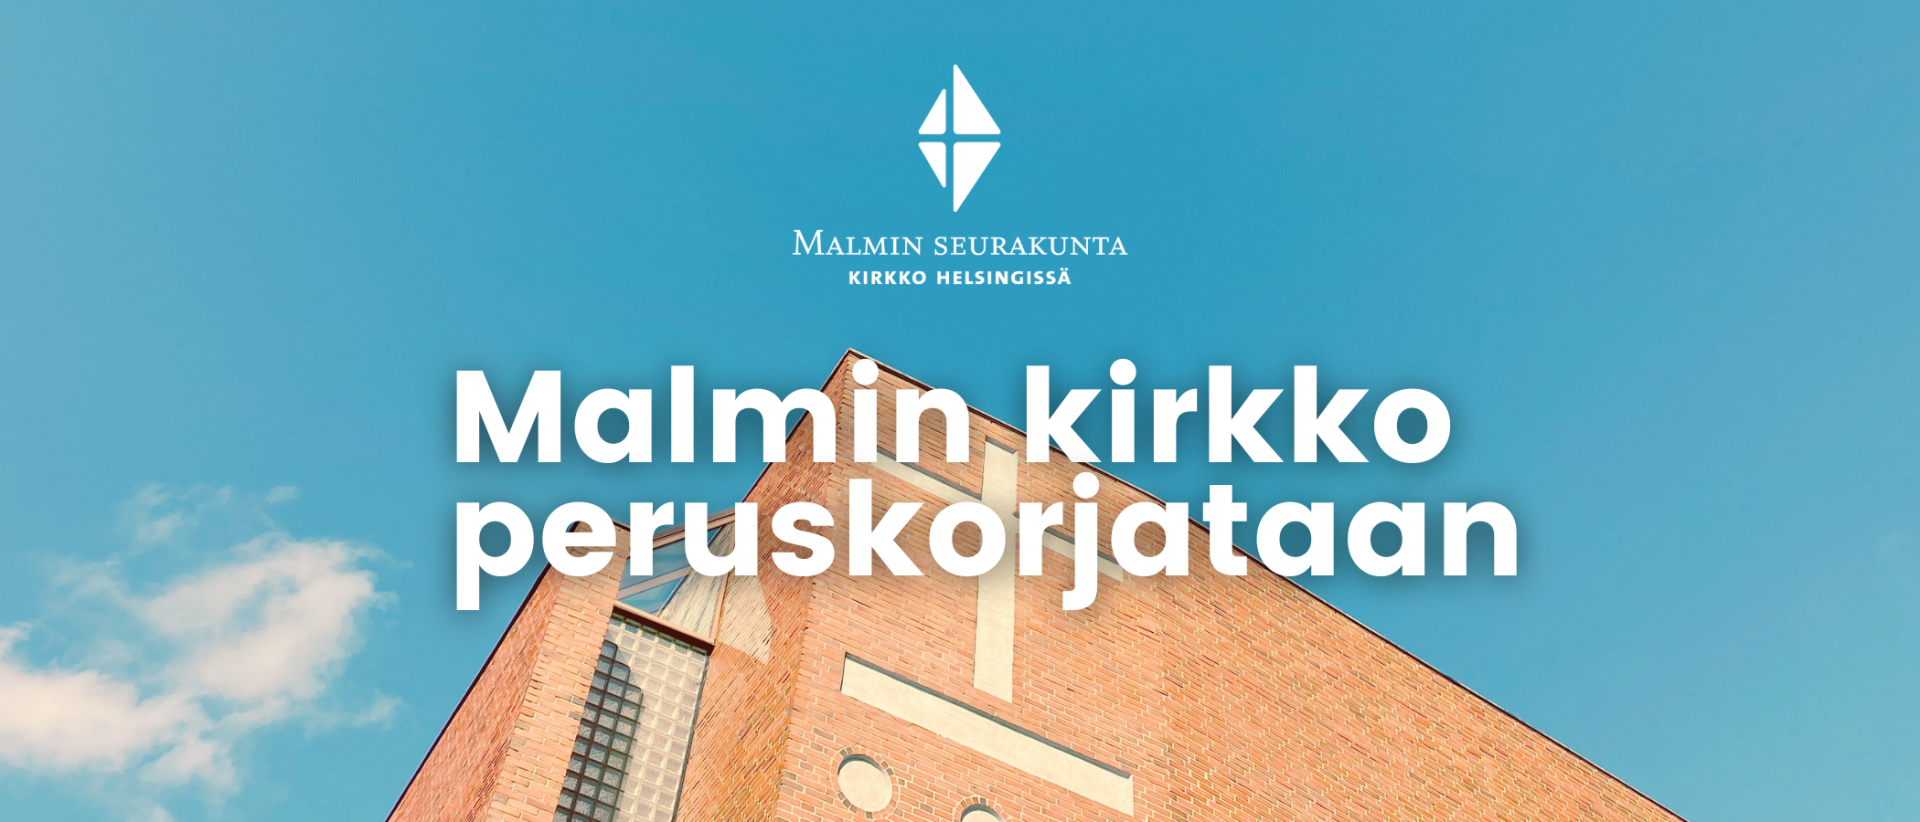 Malmin kirkko kuvattuna sinistä taivasta vasten, teksti: Malmin kirkko peruskorjataan.